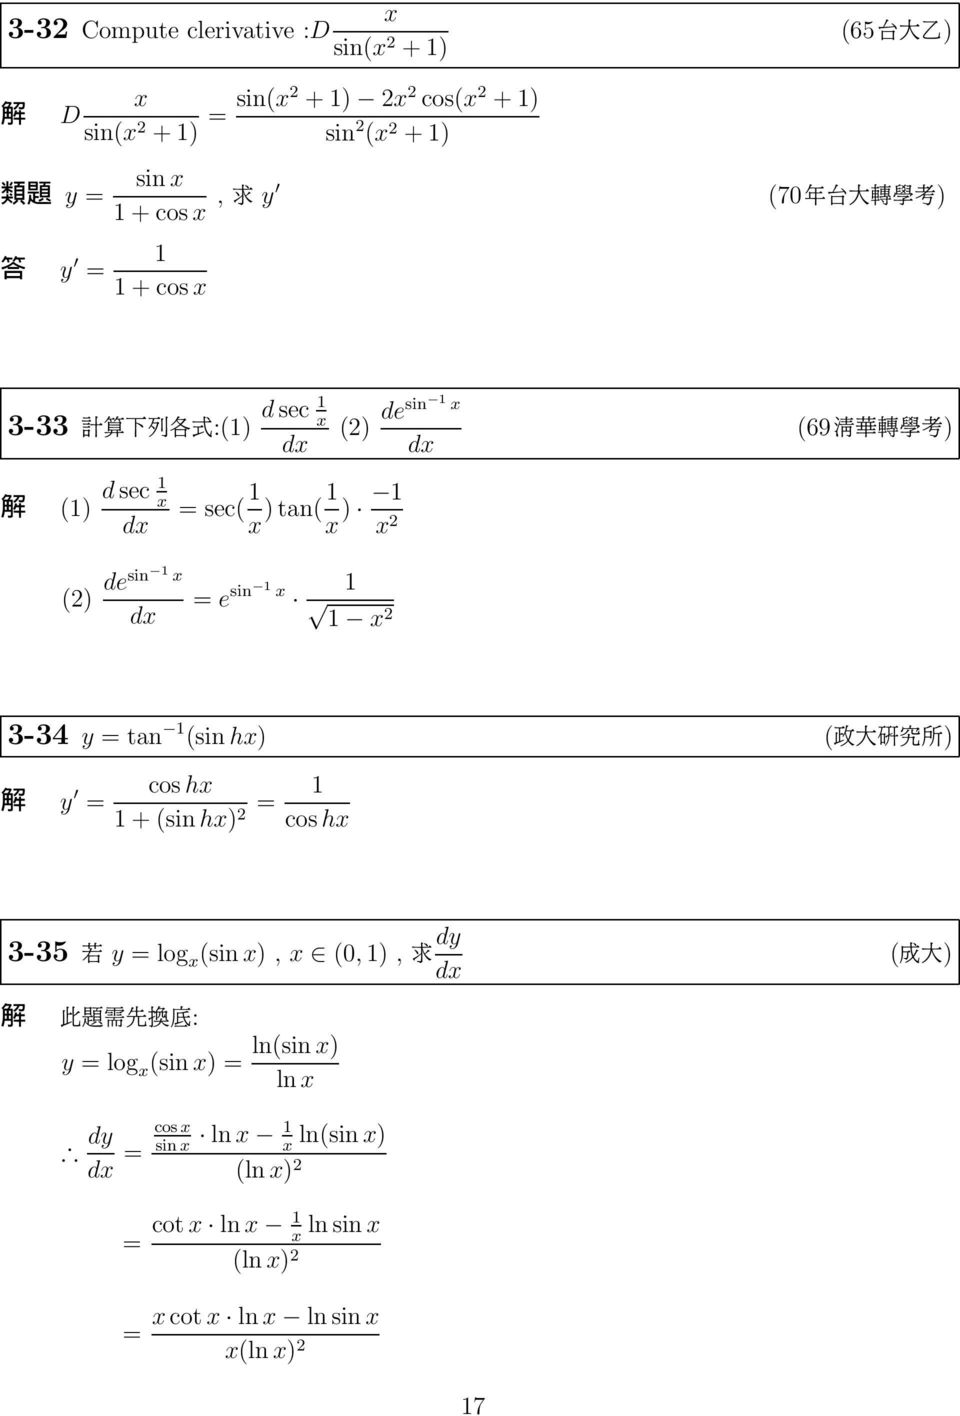 3-34 y tan (sin hx) (\ û F) y cos hx + (sin hx) cos hx 3-35 J y log x (sin x), x (0, ), dy æûl²: y log x (sin x)